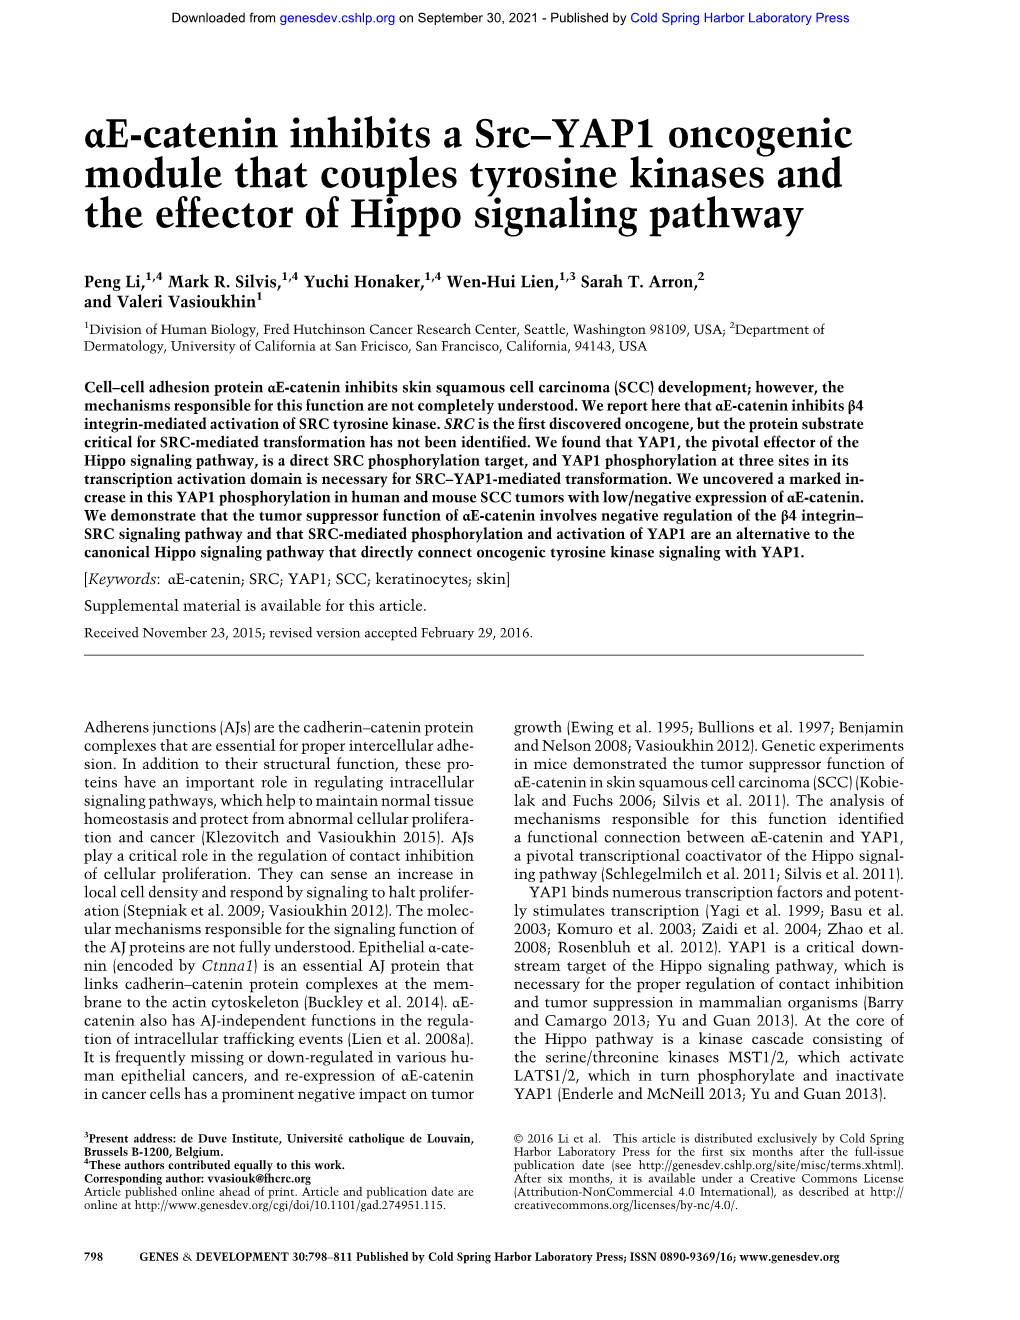 Αe-Catenin Inhibits a Src–YAP1 Oncogenic Module That Couples Tyrosine Kinases and the Effector of Hippo Signaling Pathway